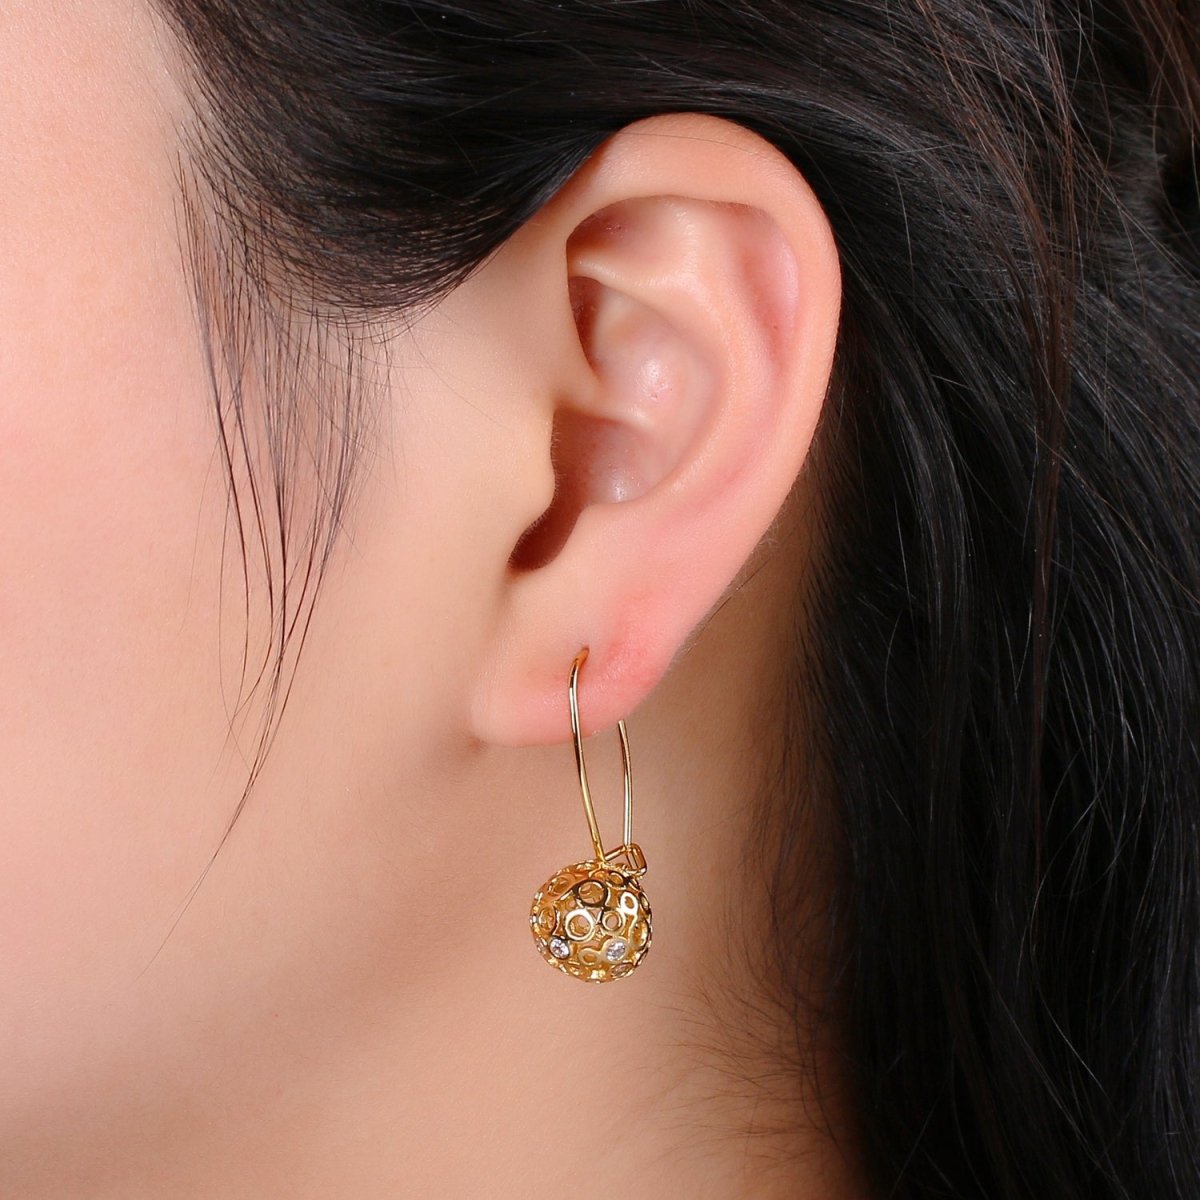 Gold Ball Earrings - 24k Gold Filled Drop Ball Earrings Dangle Earrings - Statement Jewelry Party Earring Q-324 - DLUXCA